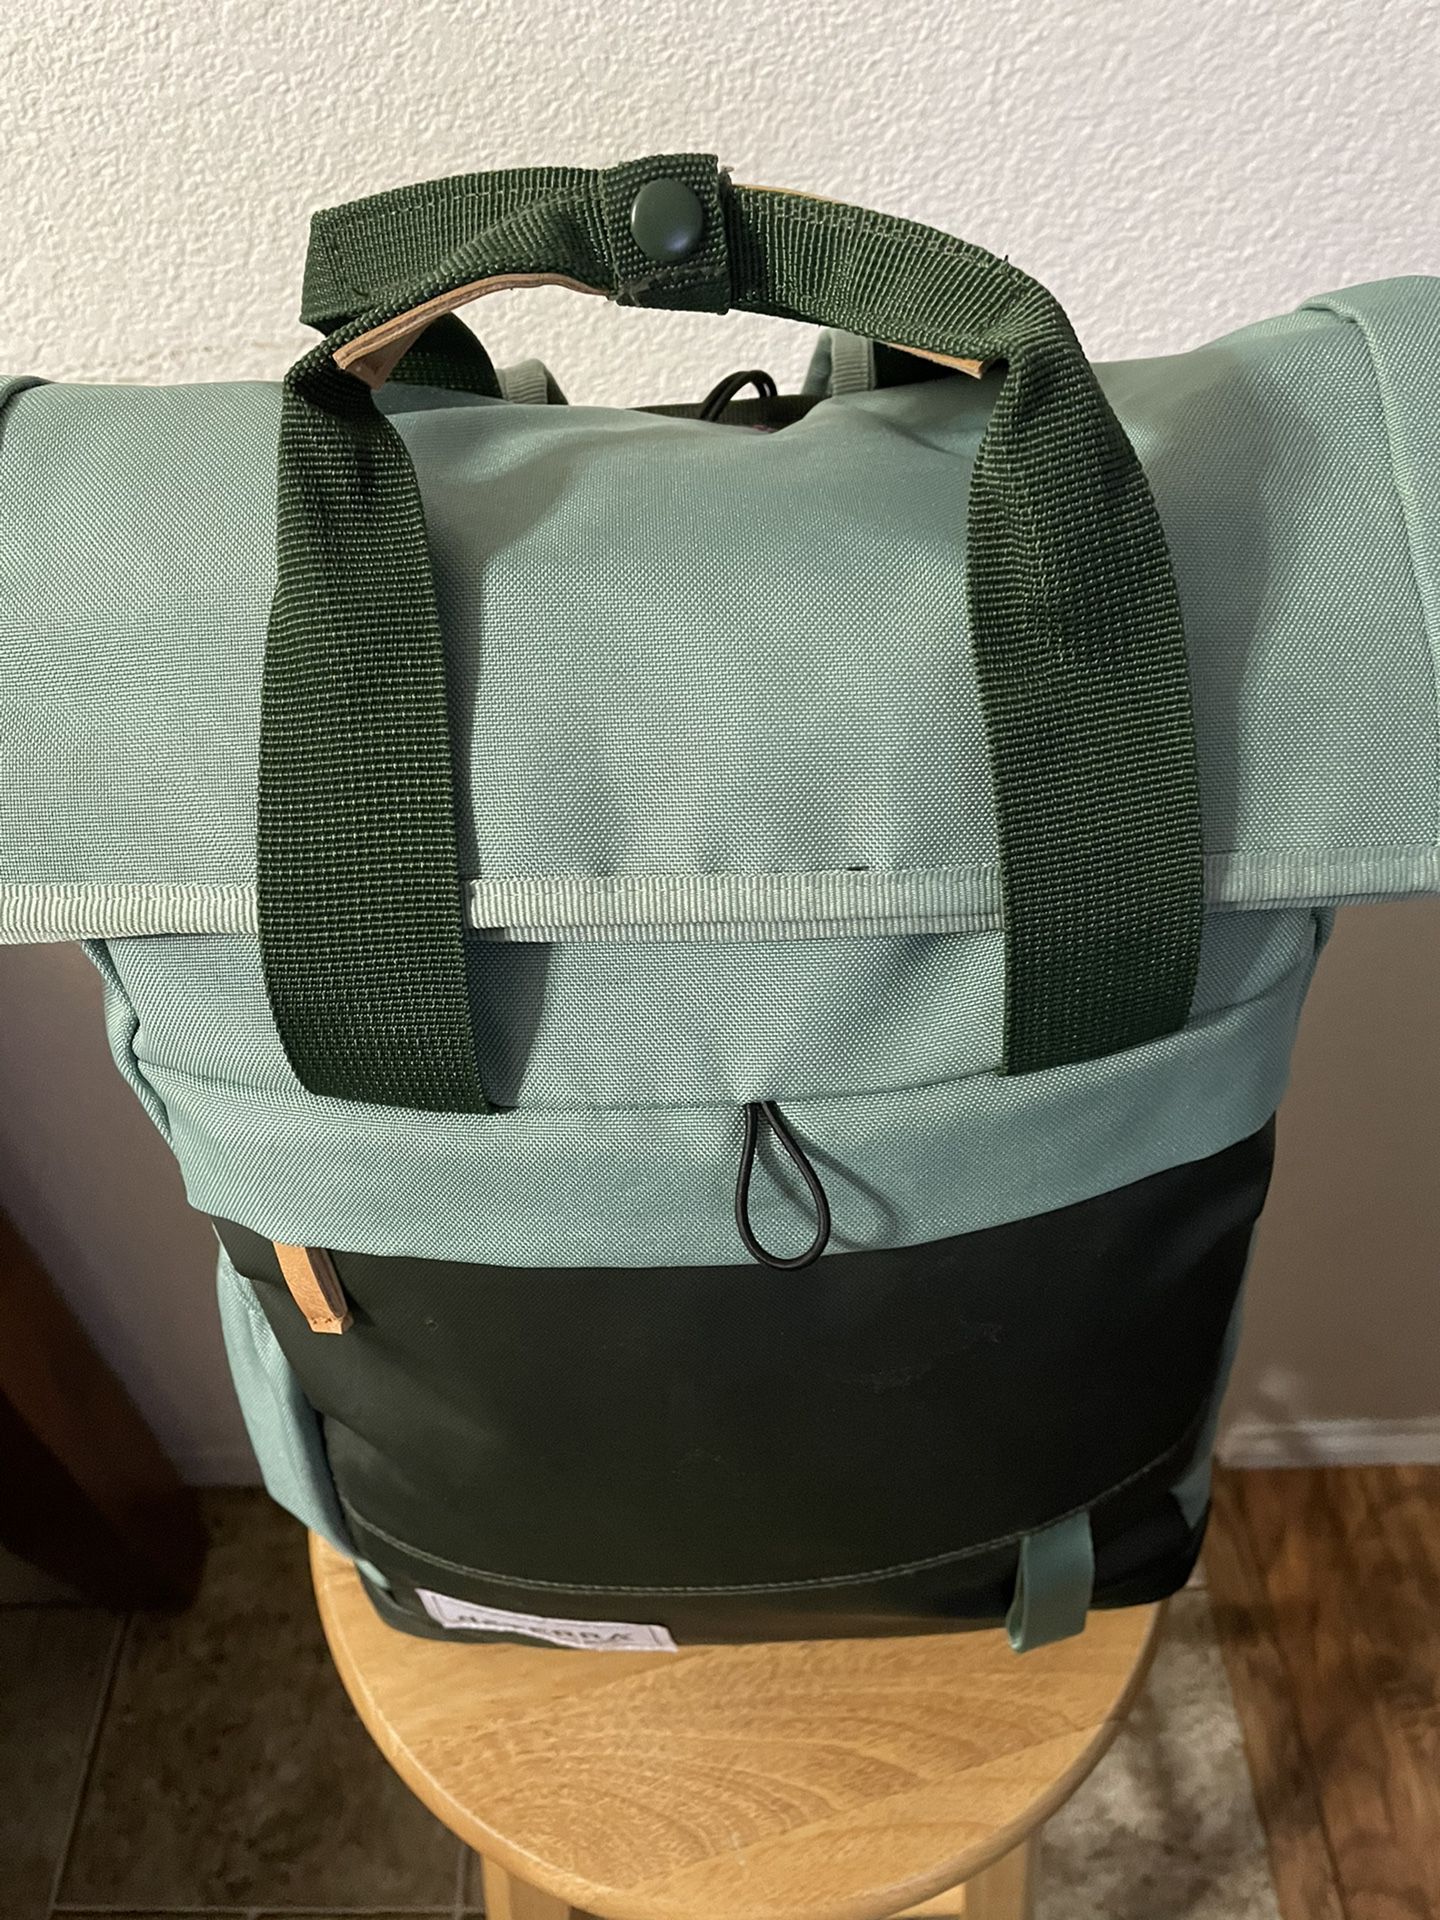 dōTERRA Backpack, Pursue Bag, Rucksack Backpack, Roll Top Backpack.